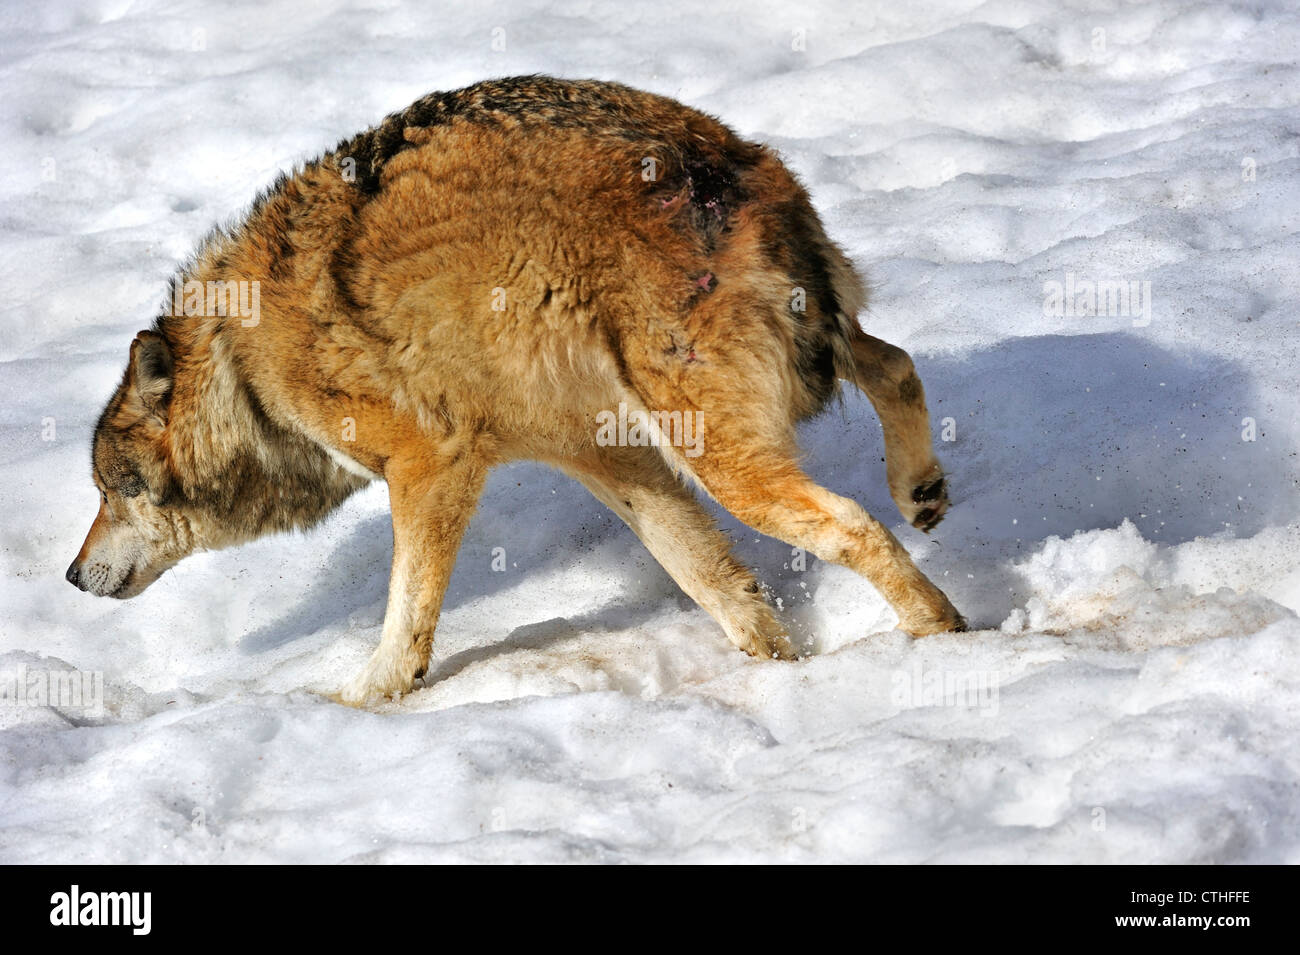 Spaventata subordinare il lupo in esecuzione fuori nella neve, mostrando sottomesso la postura da tenere orecchie piatte e coda nascosto tra le gambe Foto Stock